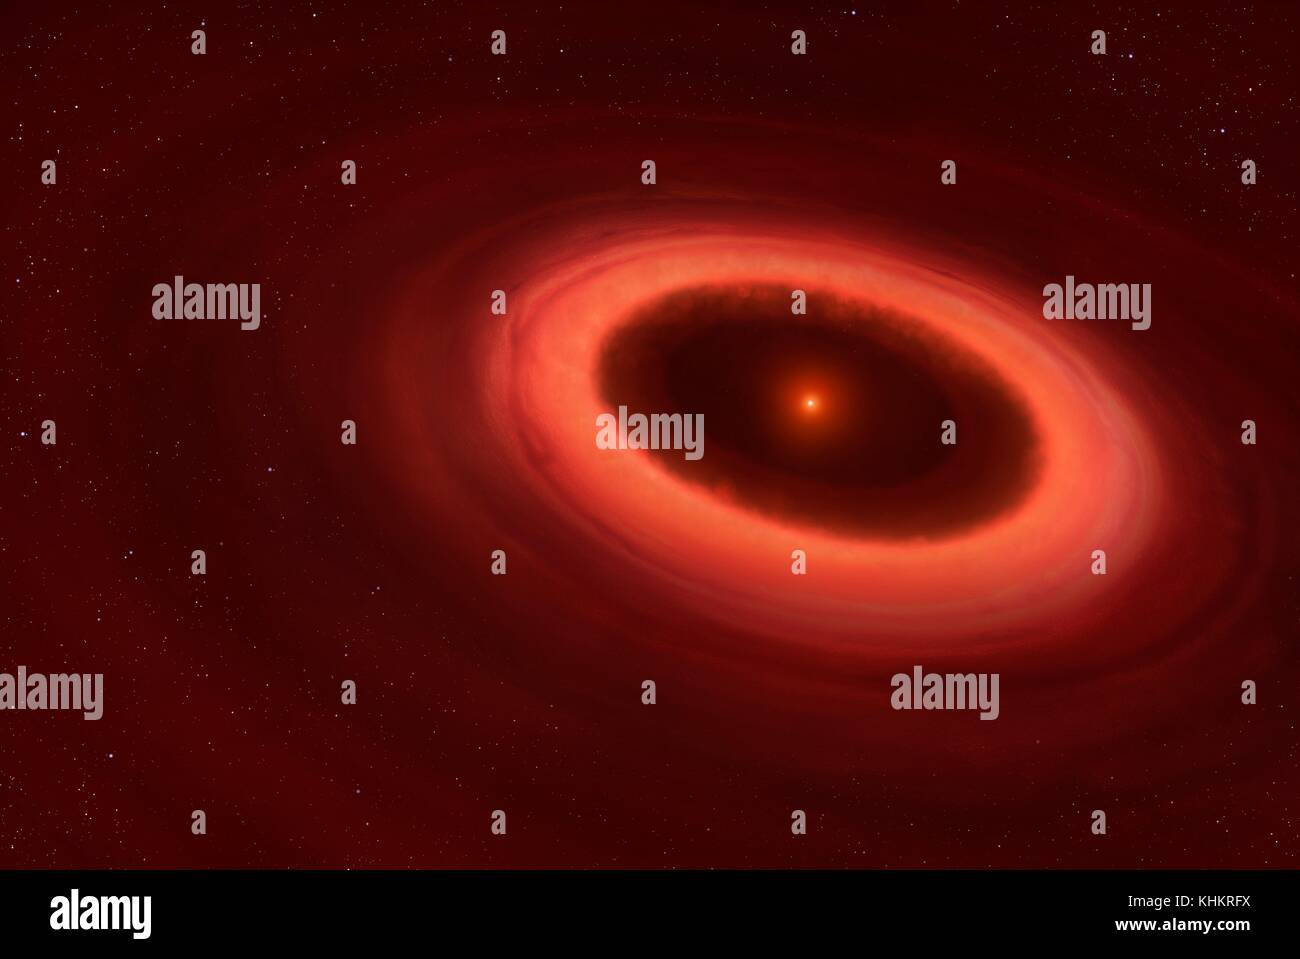 Disc um Proxima Centauri, Illustration. Die nächste Stern nach der Sonne, Proxima Centauri, hat der Hafen ein Gürtel von Staub gefunden. Astronomen mit Hilfe des Atacama Large Millimeter/submillimeter Array (ALMA) in Chile entdeckt die Emissionen von Staub Riemen um den kleinen Stern. Es ähnelt dem Asteroidengürtel in unserem eigenen Sonnensystem, mit Partikel in der Größe von Sub-millimeter Staub zu Asteroiden Kilometer. Der Riemen von kühlem Staub ist ein bis vier Mal so weit von Proxima Centauri als die Erde ist von der Sonne. Stockfoto